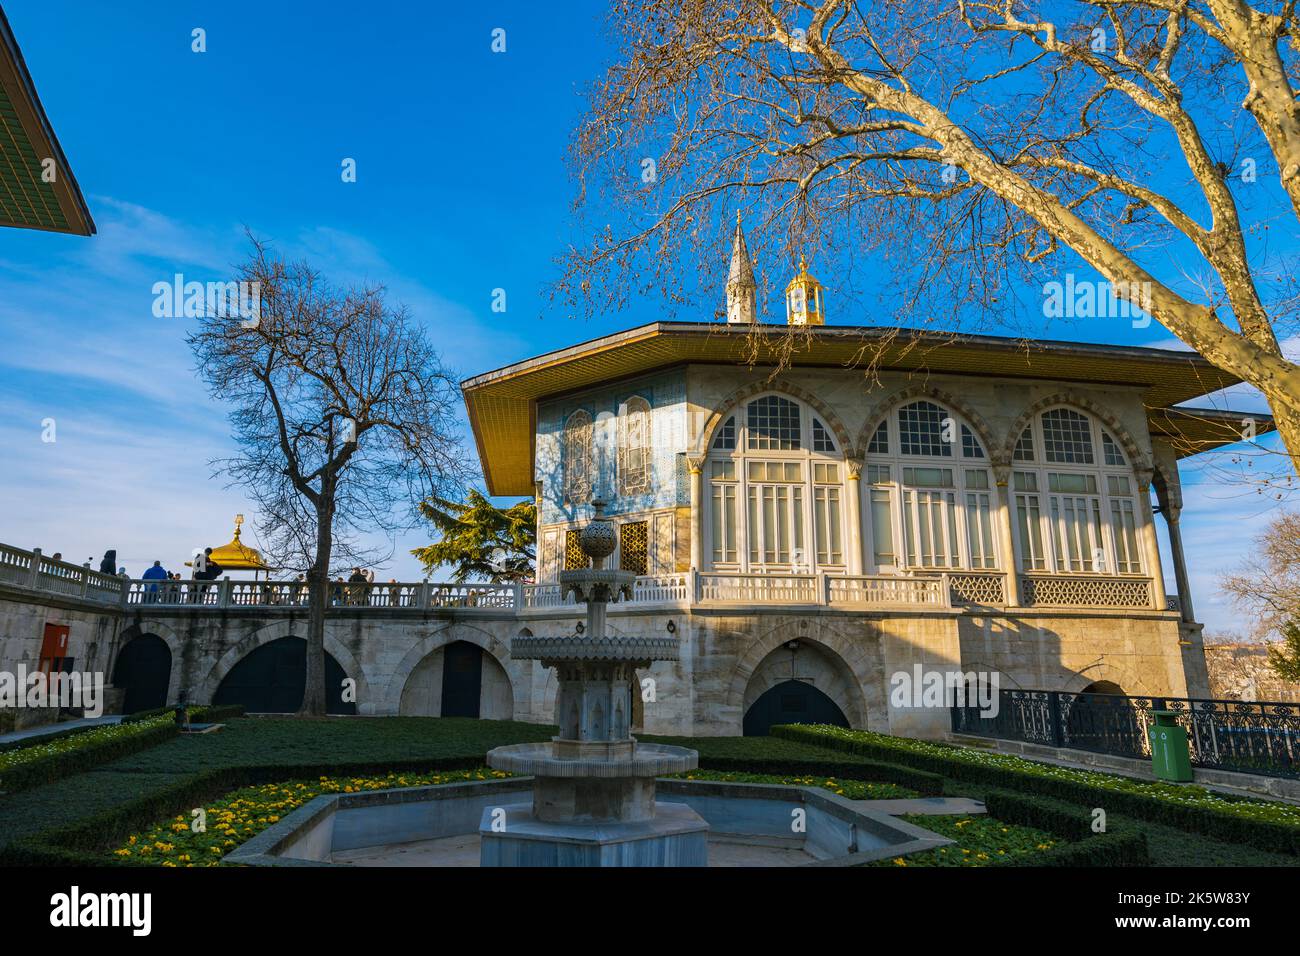 Bagdad-Pavillon oder Bagdat Kosku im Topkapi-Palast. Wahrzeichen von Istanbul Hintergrundbild. Istanbul Türkei - 12.27.2021 Stockfoto